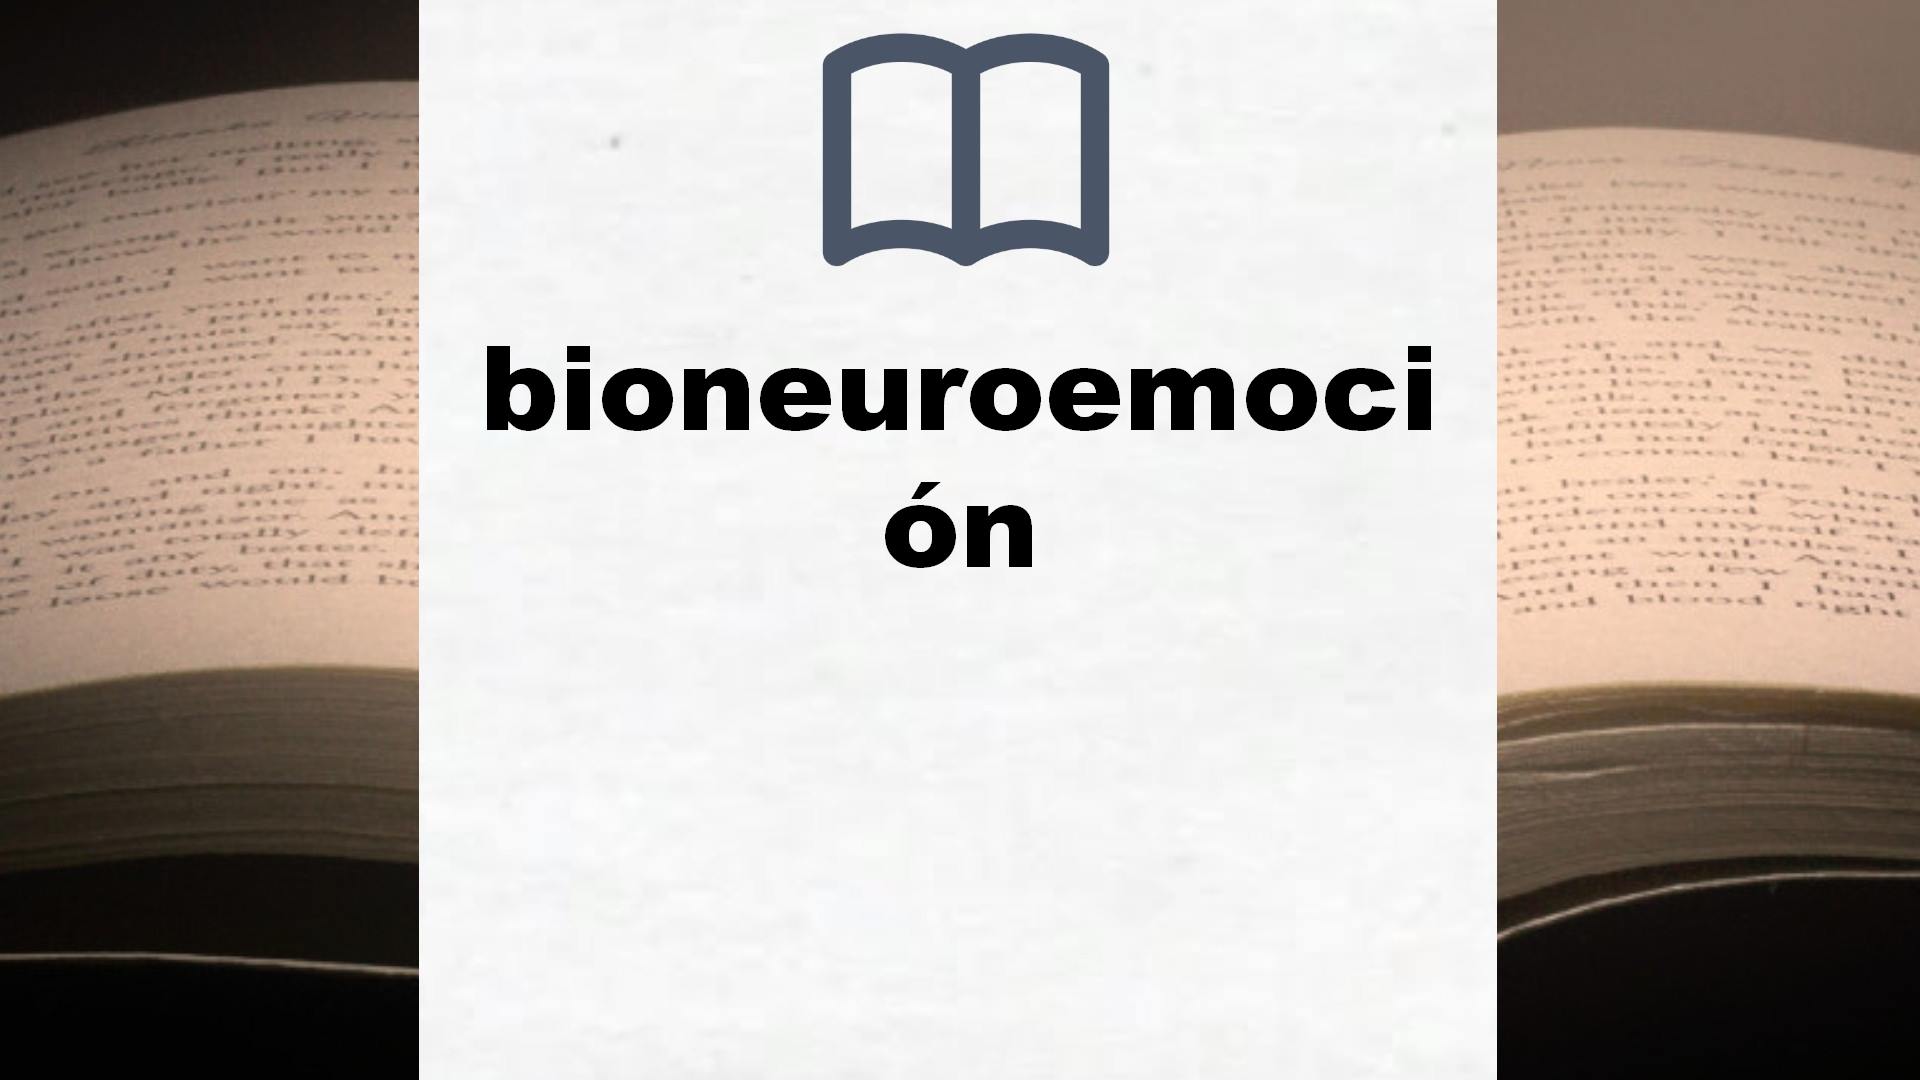 Libros sobre bioneuroemoción